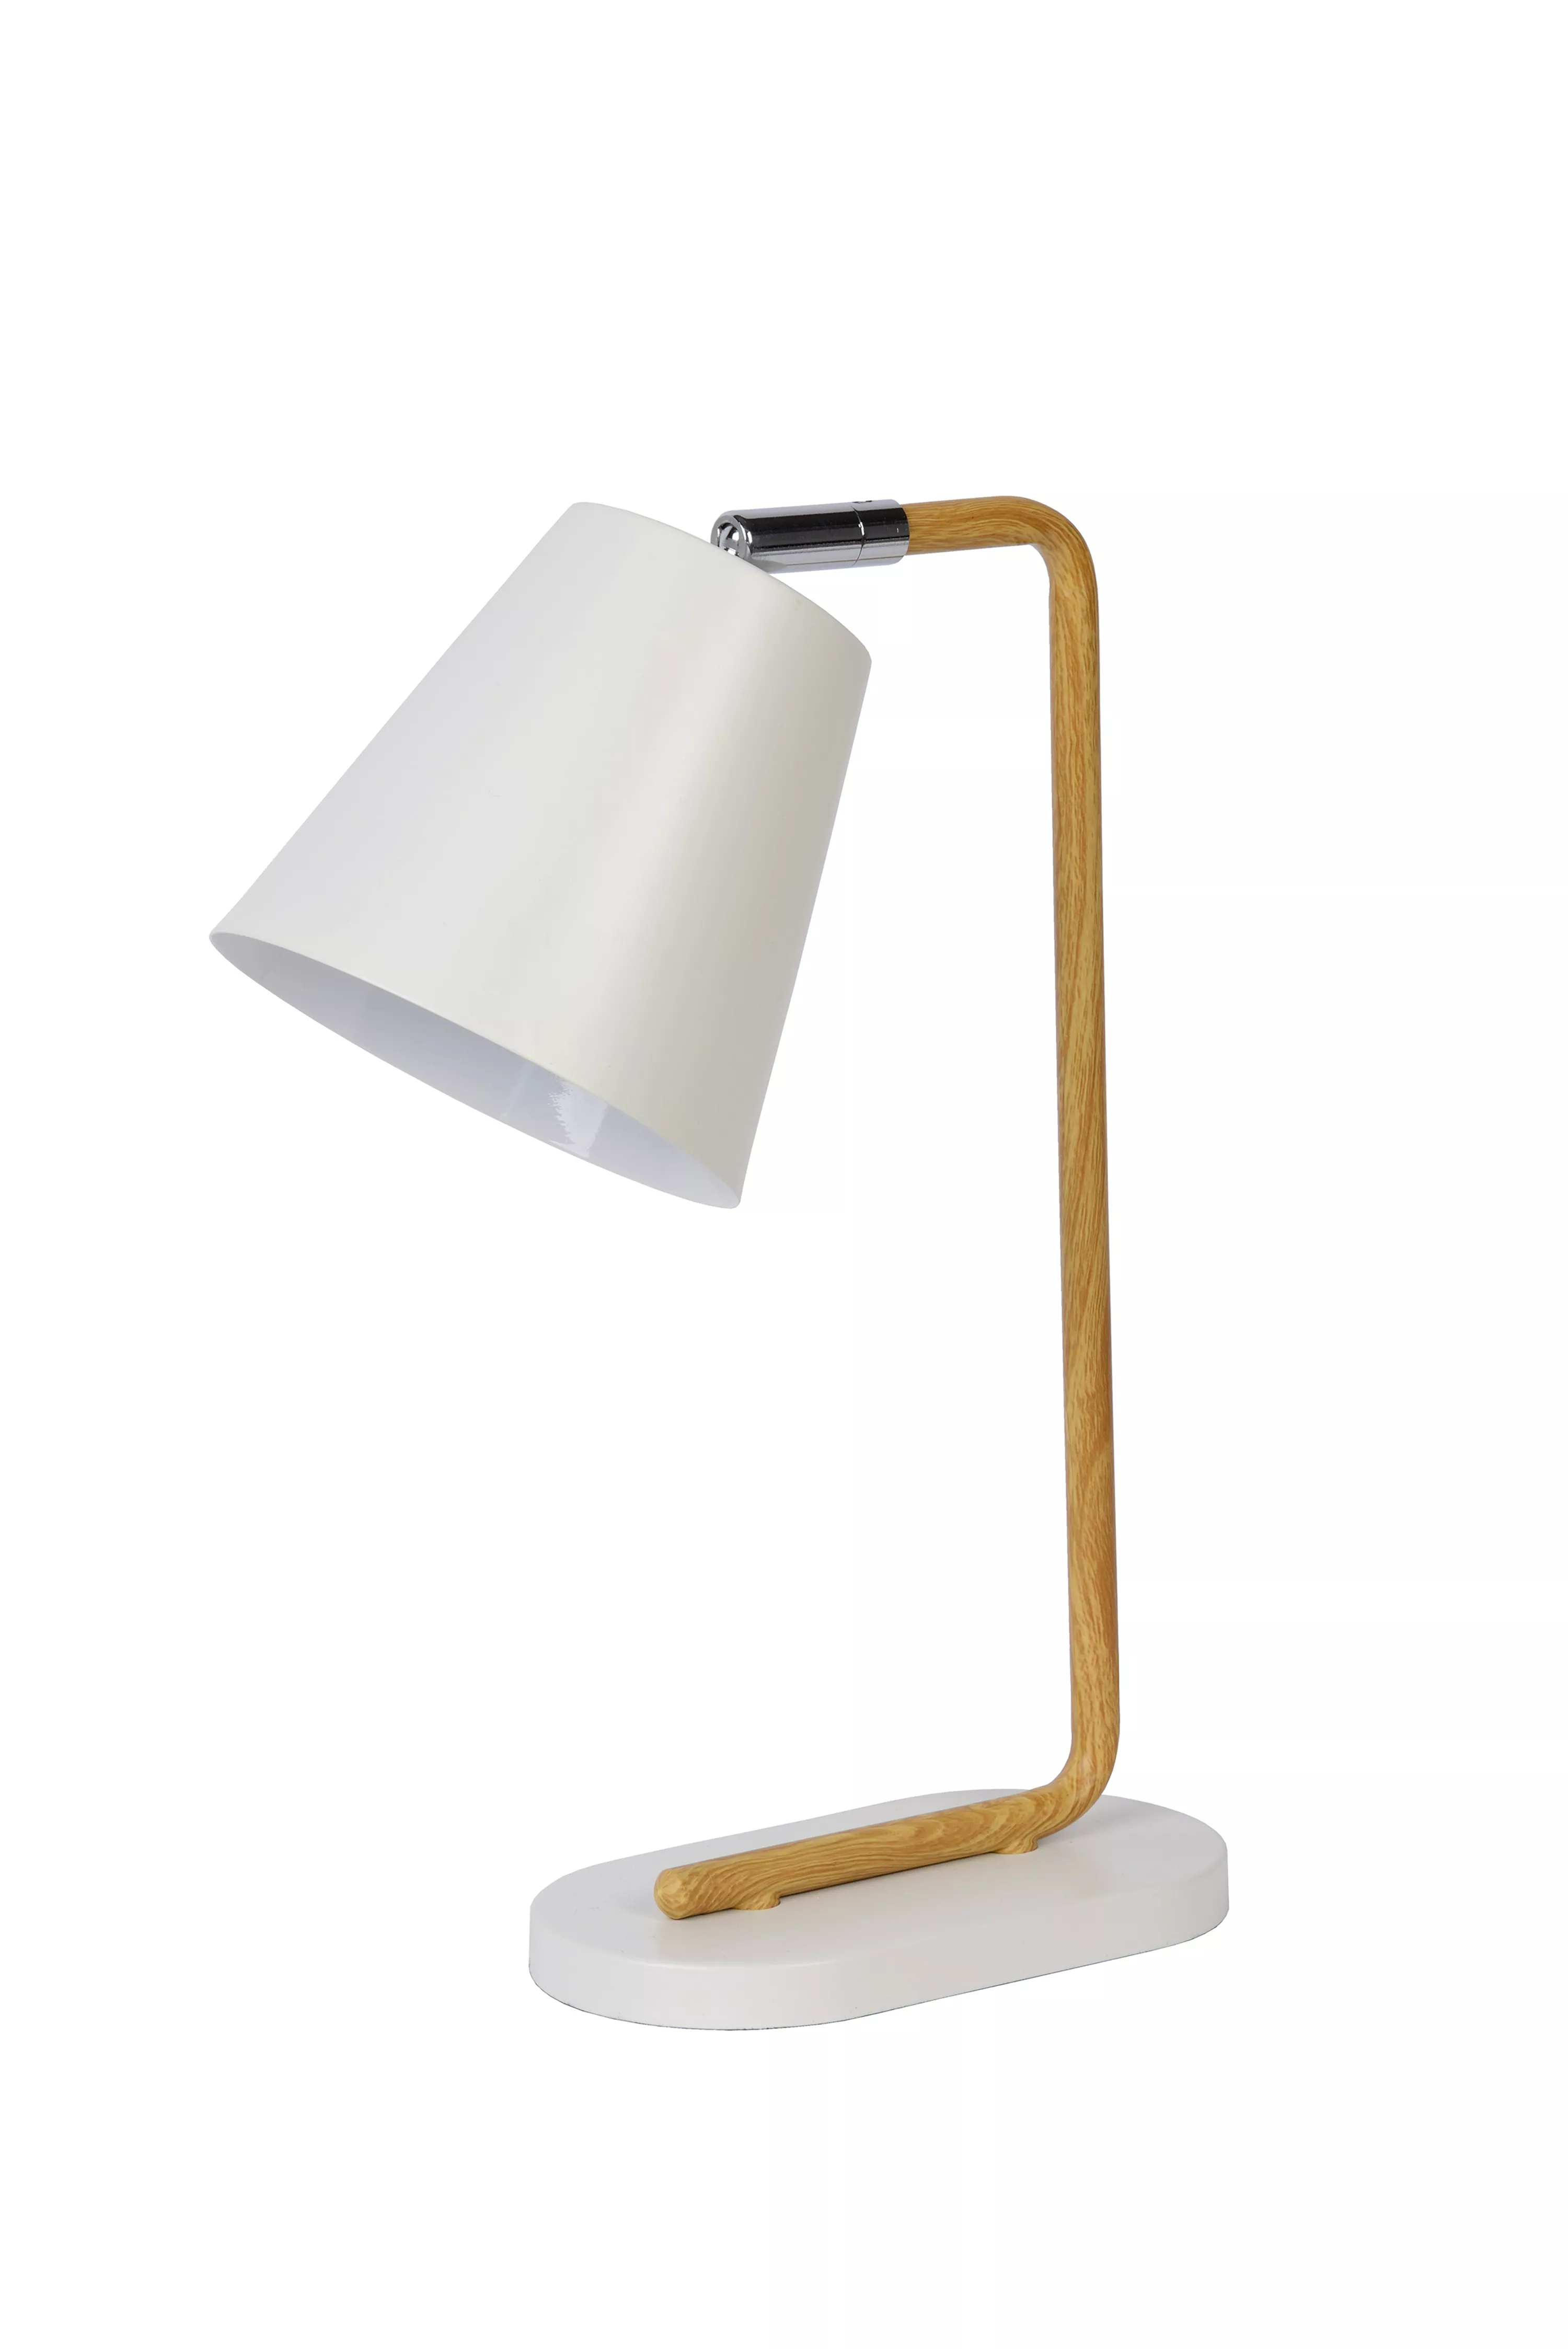 Stolní lampička Cona v bílém provedení s kovovou tyčí v motivu dřeva a s otočným kloubem pro snadné směrování stínítka.